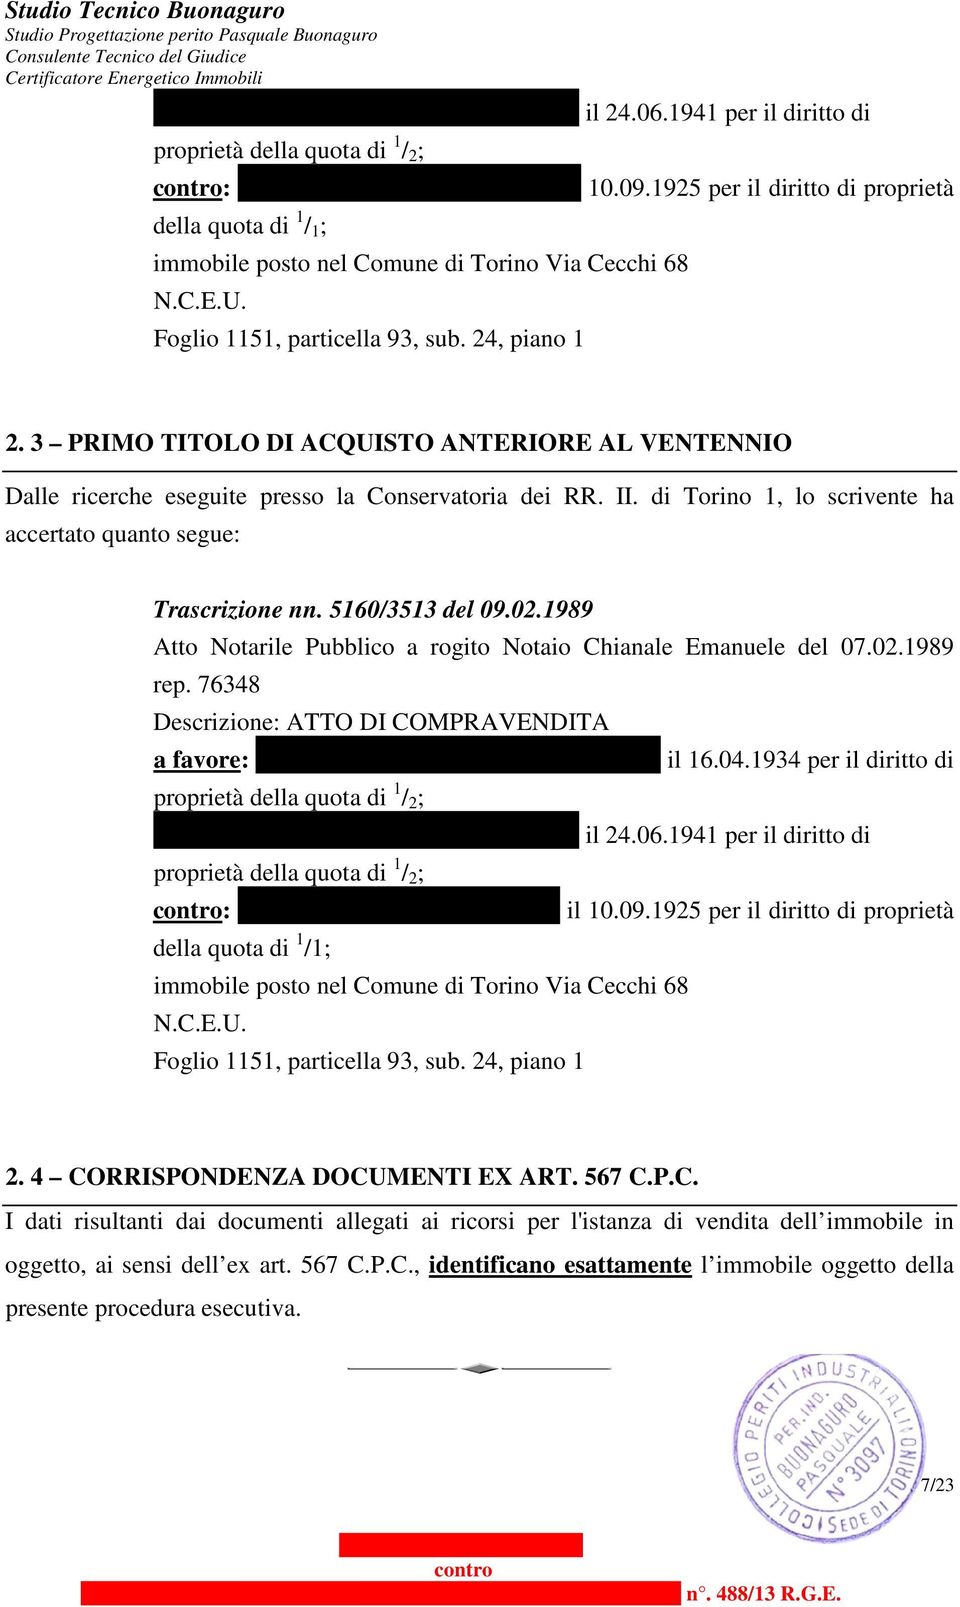 3 PRIMO TITOLO DI ACQUISTO ANTERIORE AL VENTENNIO Dalle ricerche eseguite presso la Conservatoria dei RR. II. di Torino 1, lo scrivente ha accertato quanto segue: Trascrizione nn. 5160/3513 del 09.02.